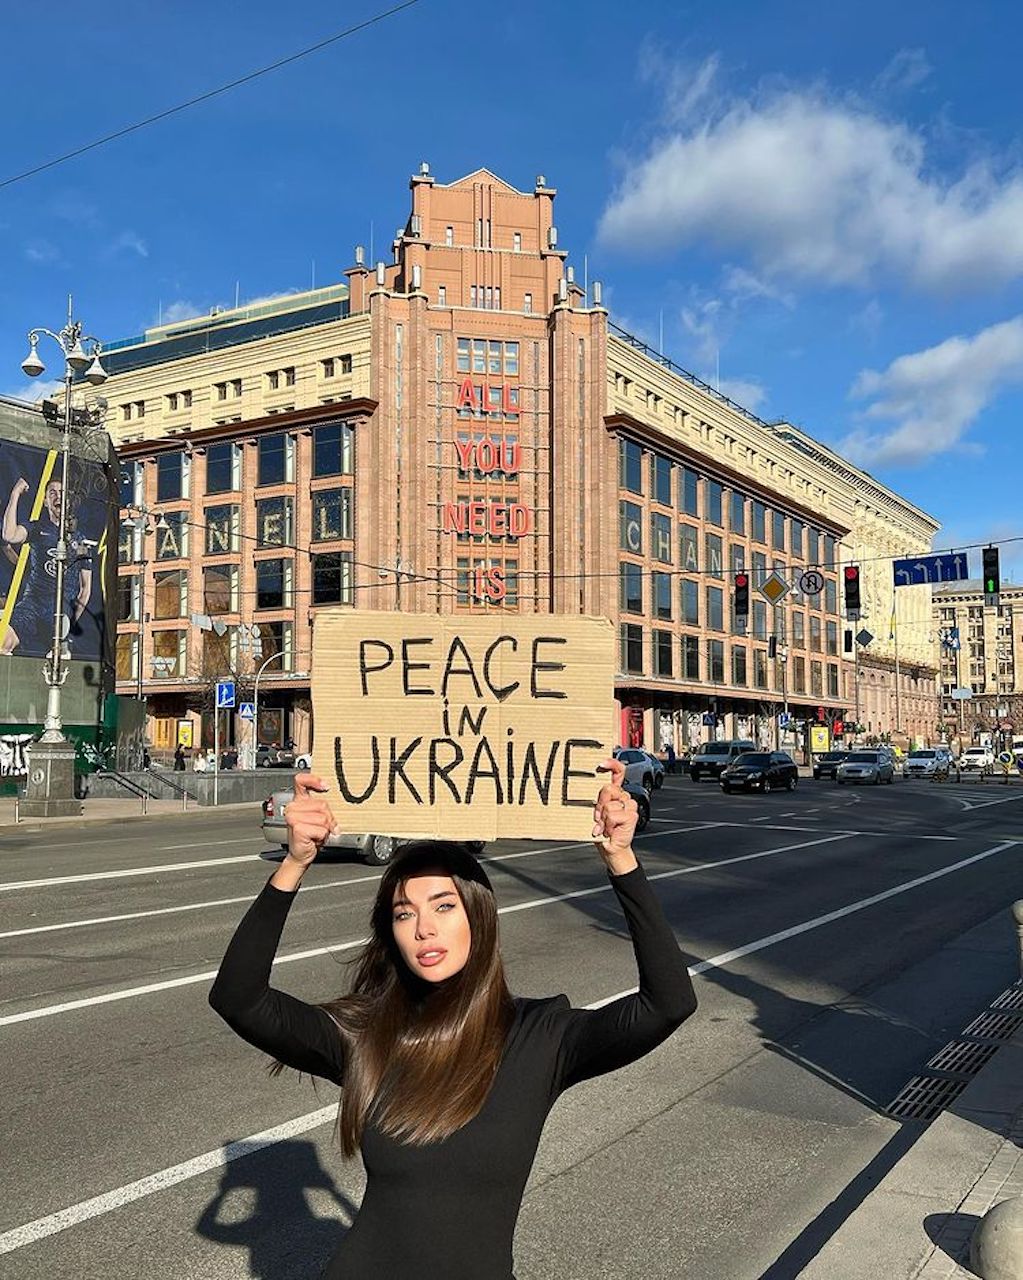 Hoa hậu Hoàn vũ Ukraine xuống đường phản đối chiến tranh